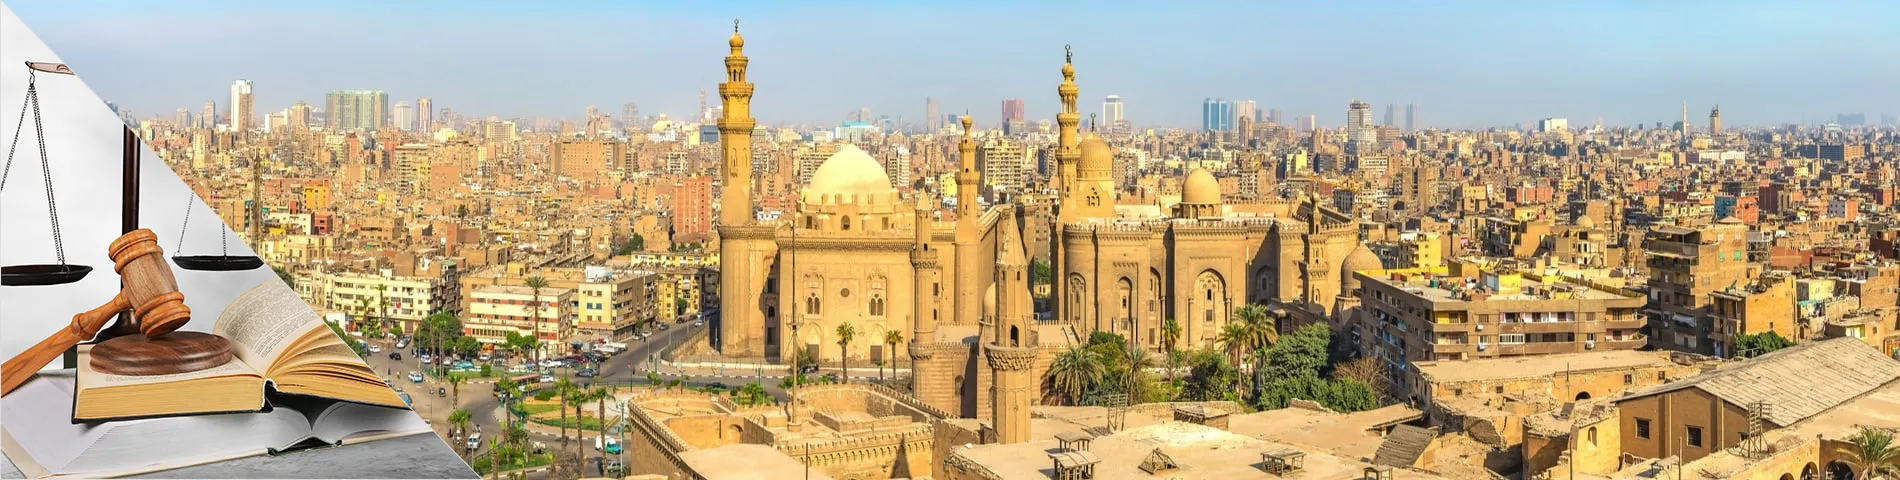 Caïro - Law